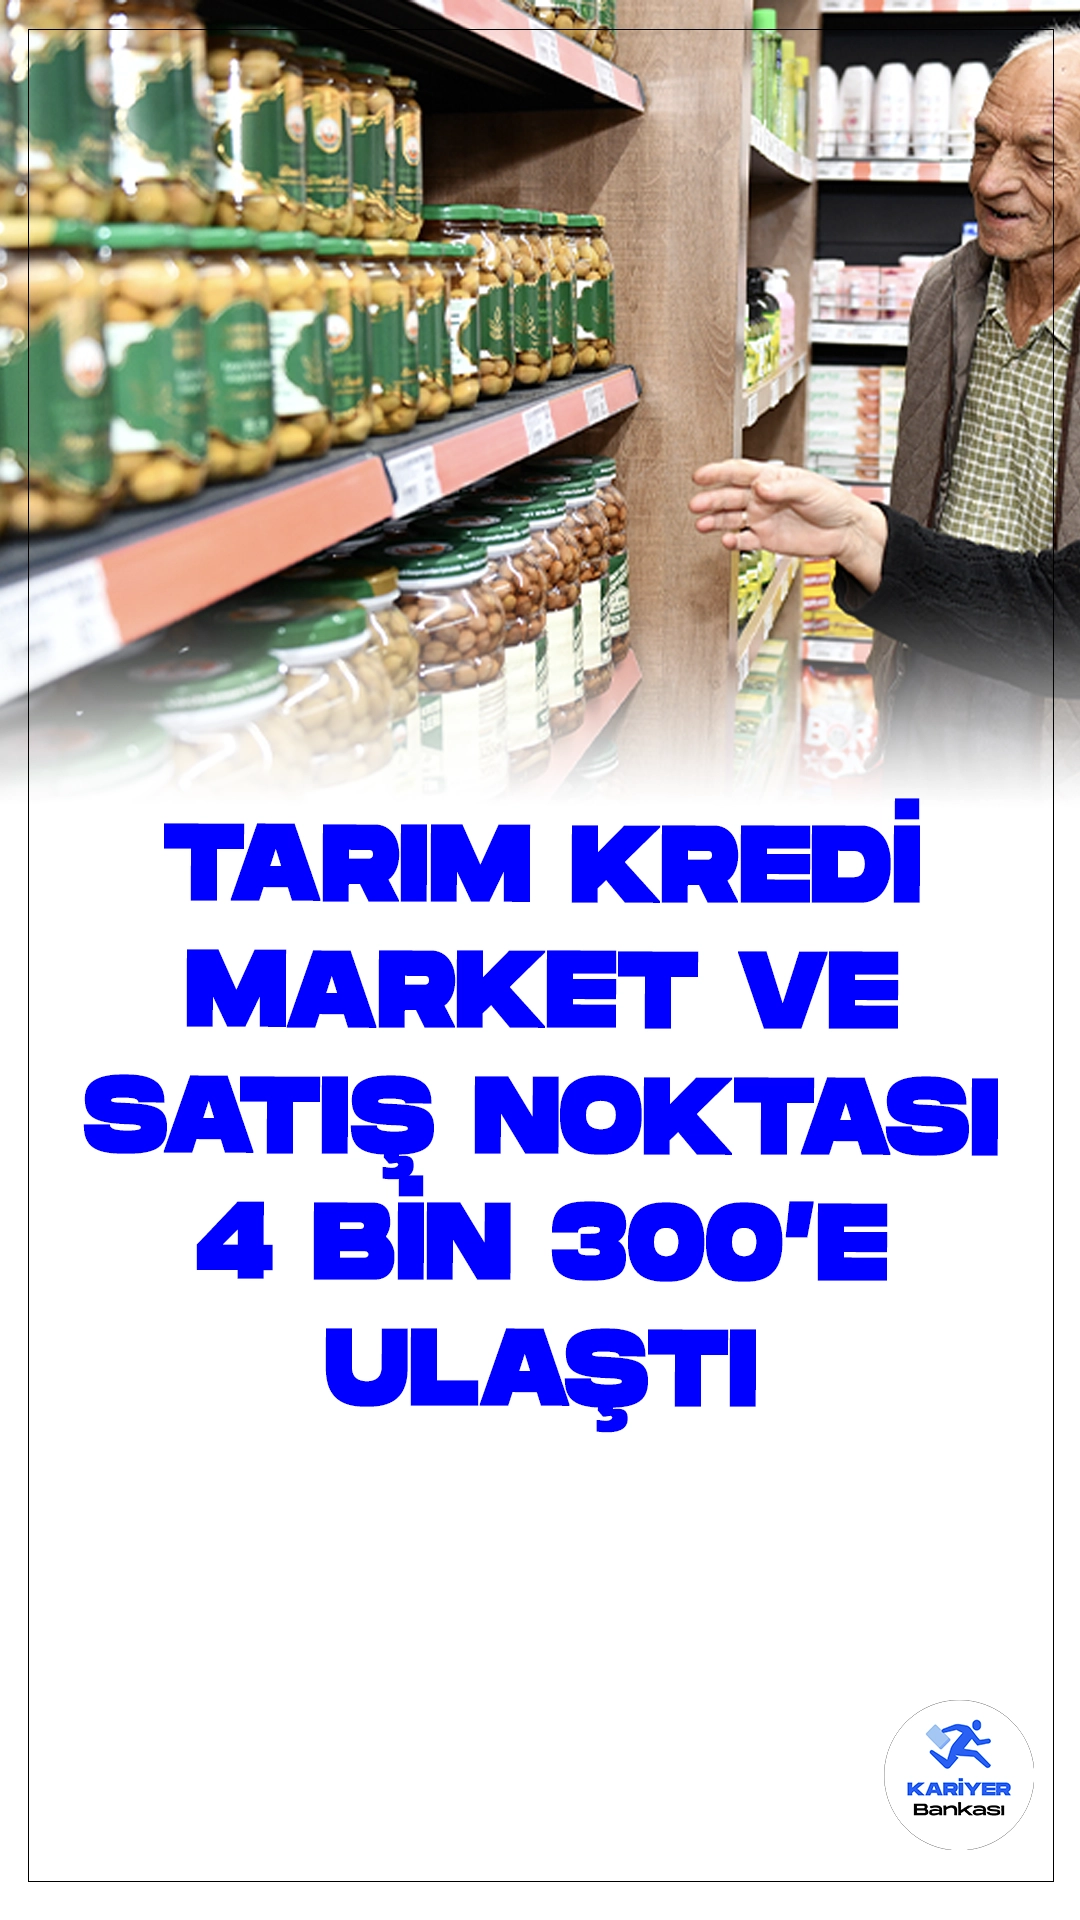 Tarım Kredi'nin Market ve Satış Noktası Sayısı 4 Bin 300'e Ulaştı.Türkiye Tarım Kredi Kooperatiflerinin yurt genelindeki market ve satış noktası sayısı 4 bin 300'e ulaştı. Tarım Kredi, il merkezlerinin yanı sıra ilçelerde de vatandaşlara alışveriş imkanı sunuyor.